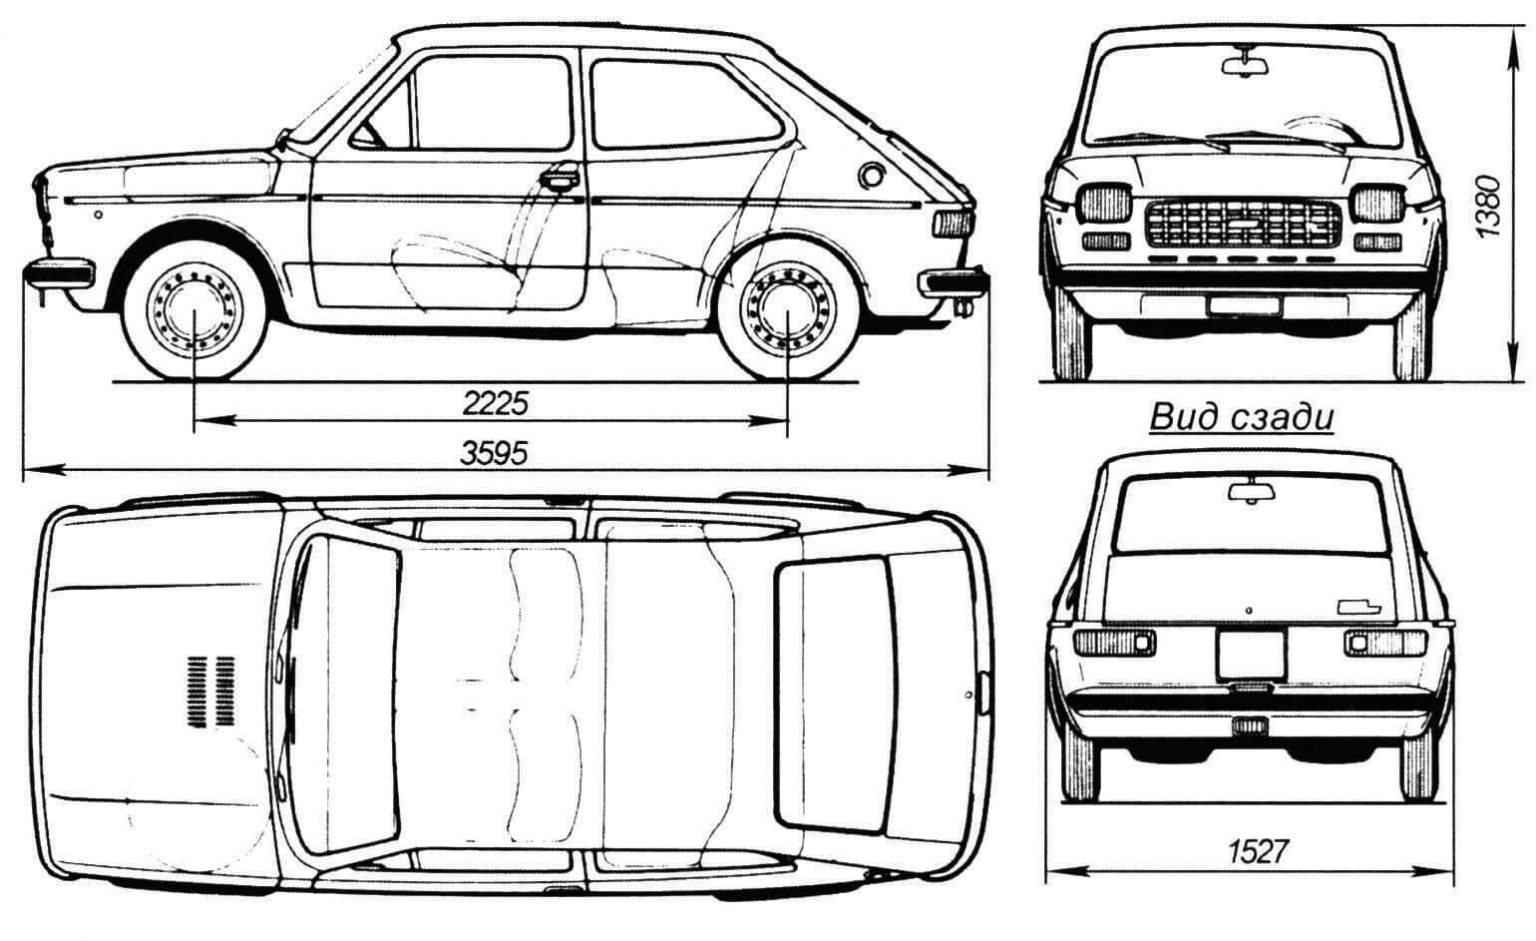 Как сделать чертеж машины. Fiat 126 чертеж. Габаритный чертеж автомобиля. Машина чертеж от руки. Задний вид машины чертеж.